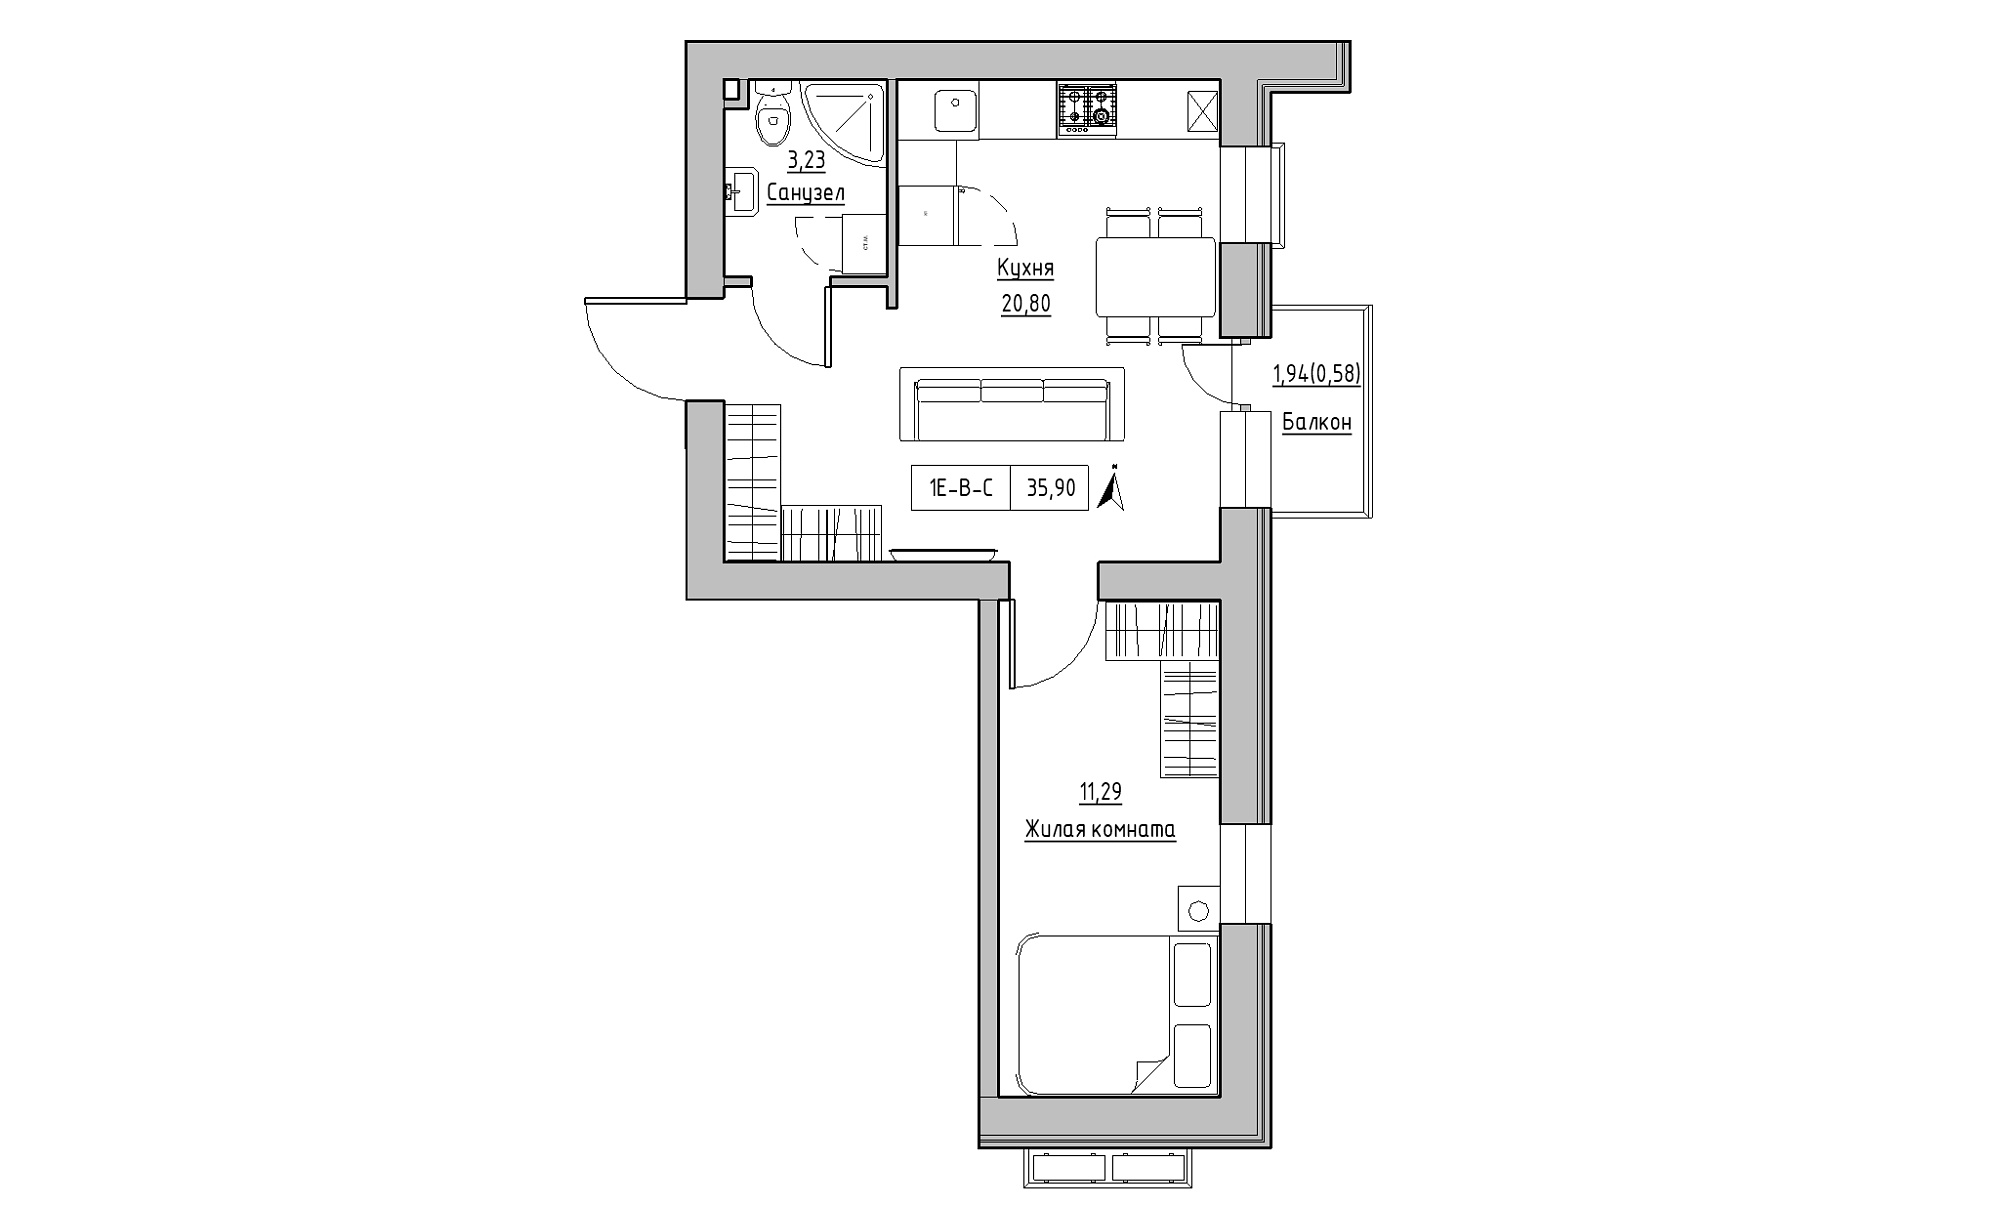 Планування 1-к квартира площею 35.9м2, KS-023-02/0008.